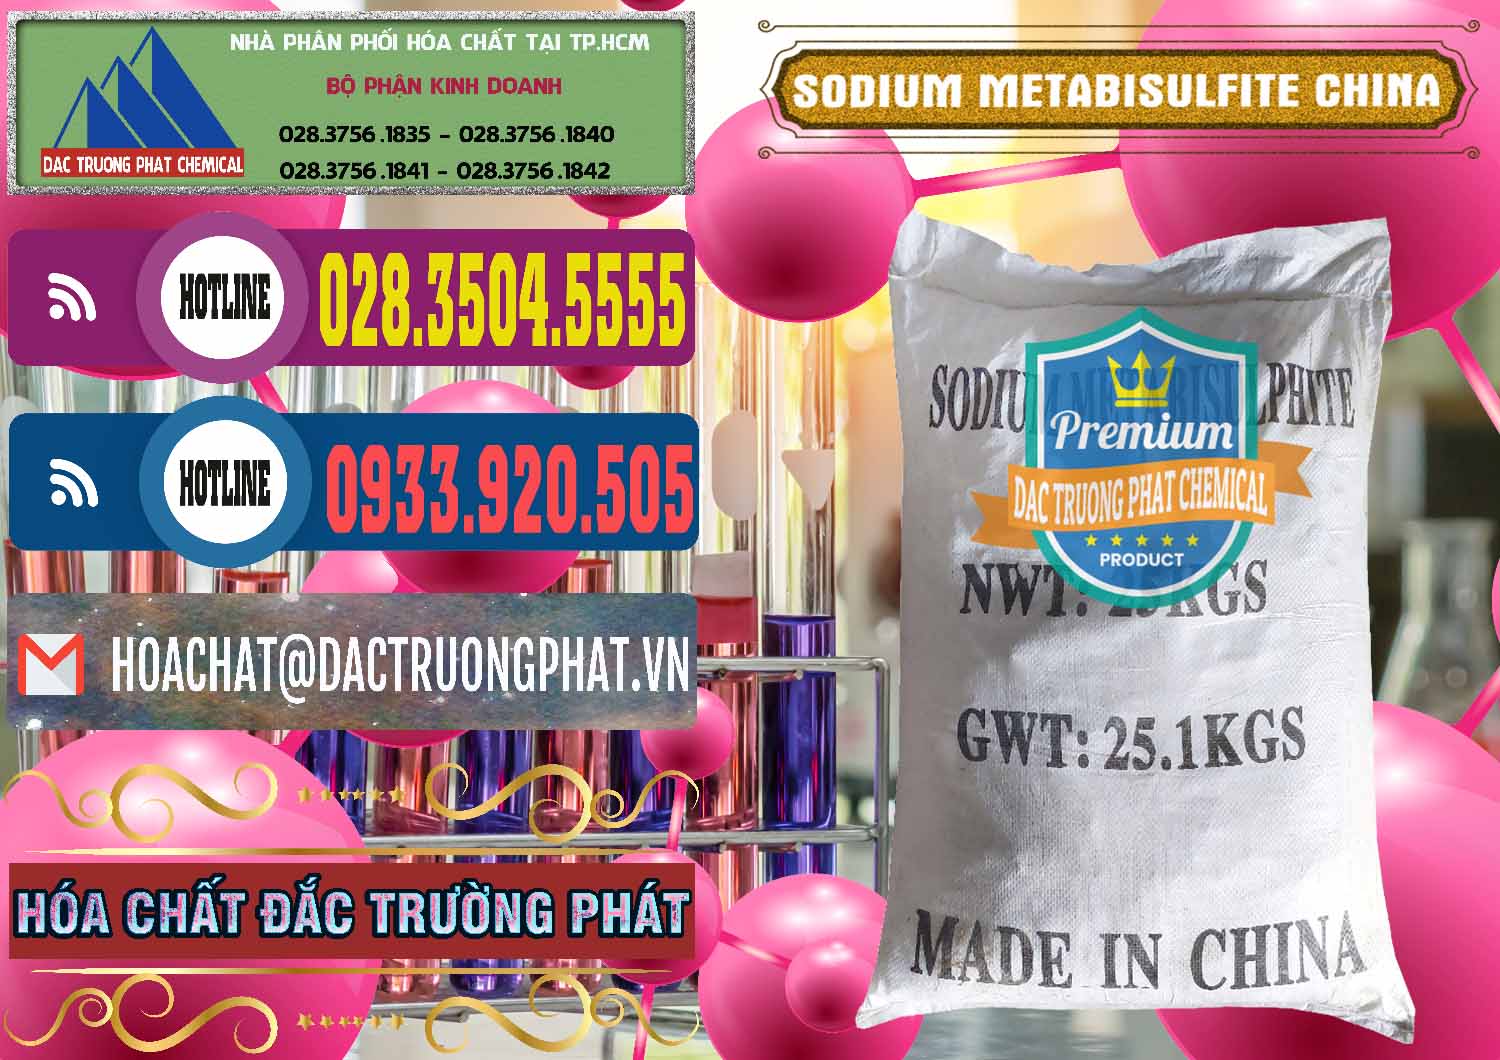 Cty chuyên kinh doanh _ bán Sodium Metabisulfite - NA2S2O5 Trung Quốc China - 0484 - Đơn vị chuyên kinh doanh - phân phối hóa chất tại TP.HCM - muabanhoachat.com.vn